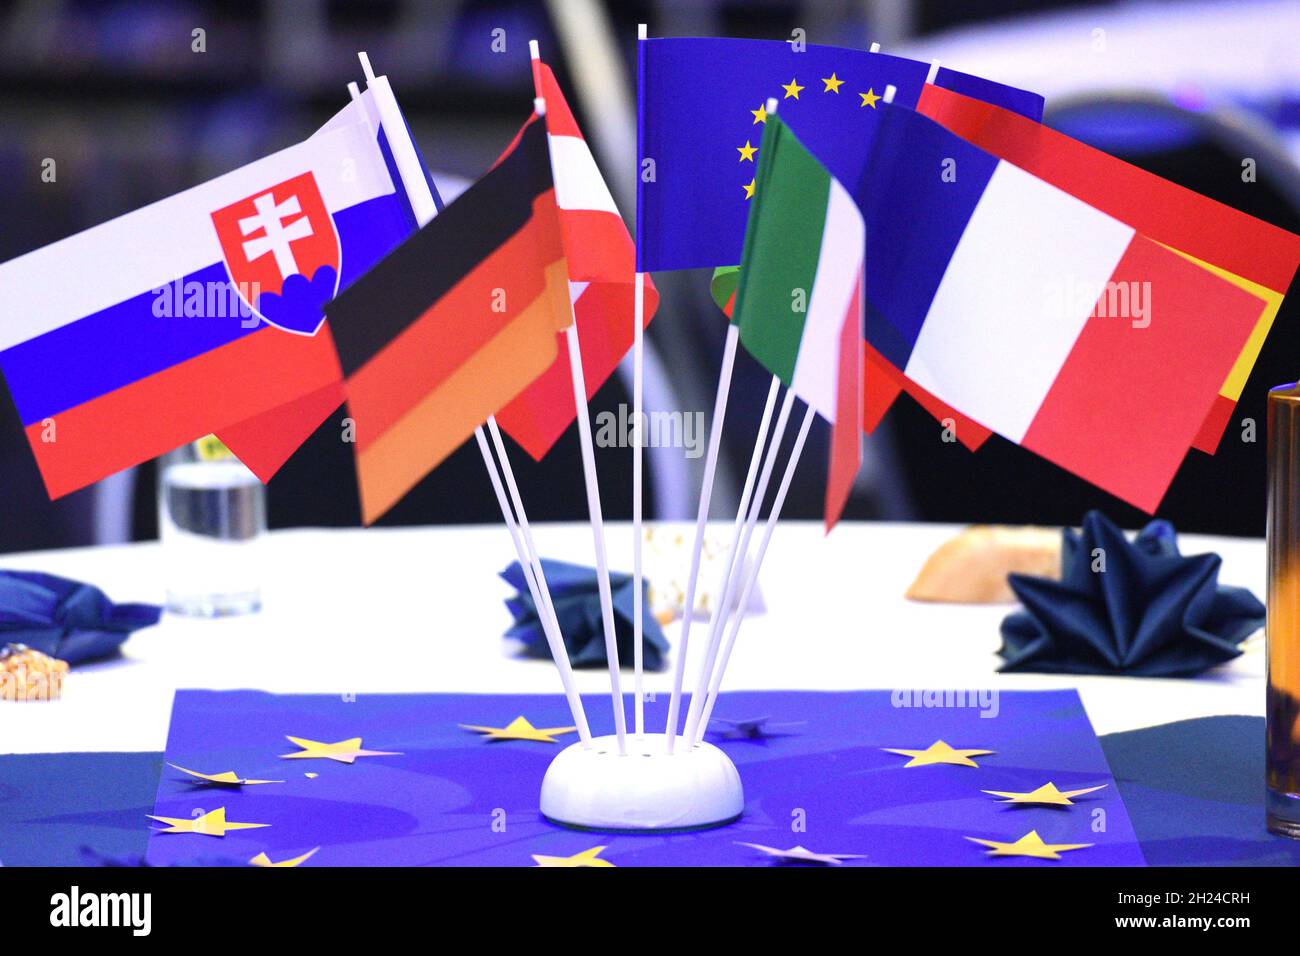 Einige Fähnchen von EU-Mitgliedsstaaten auf einem Tisch - alcune bandiere di stati membri dell'UE su un tavolo Foto Stock